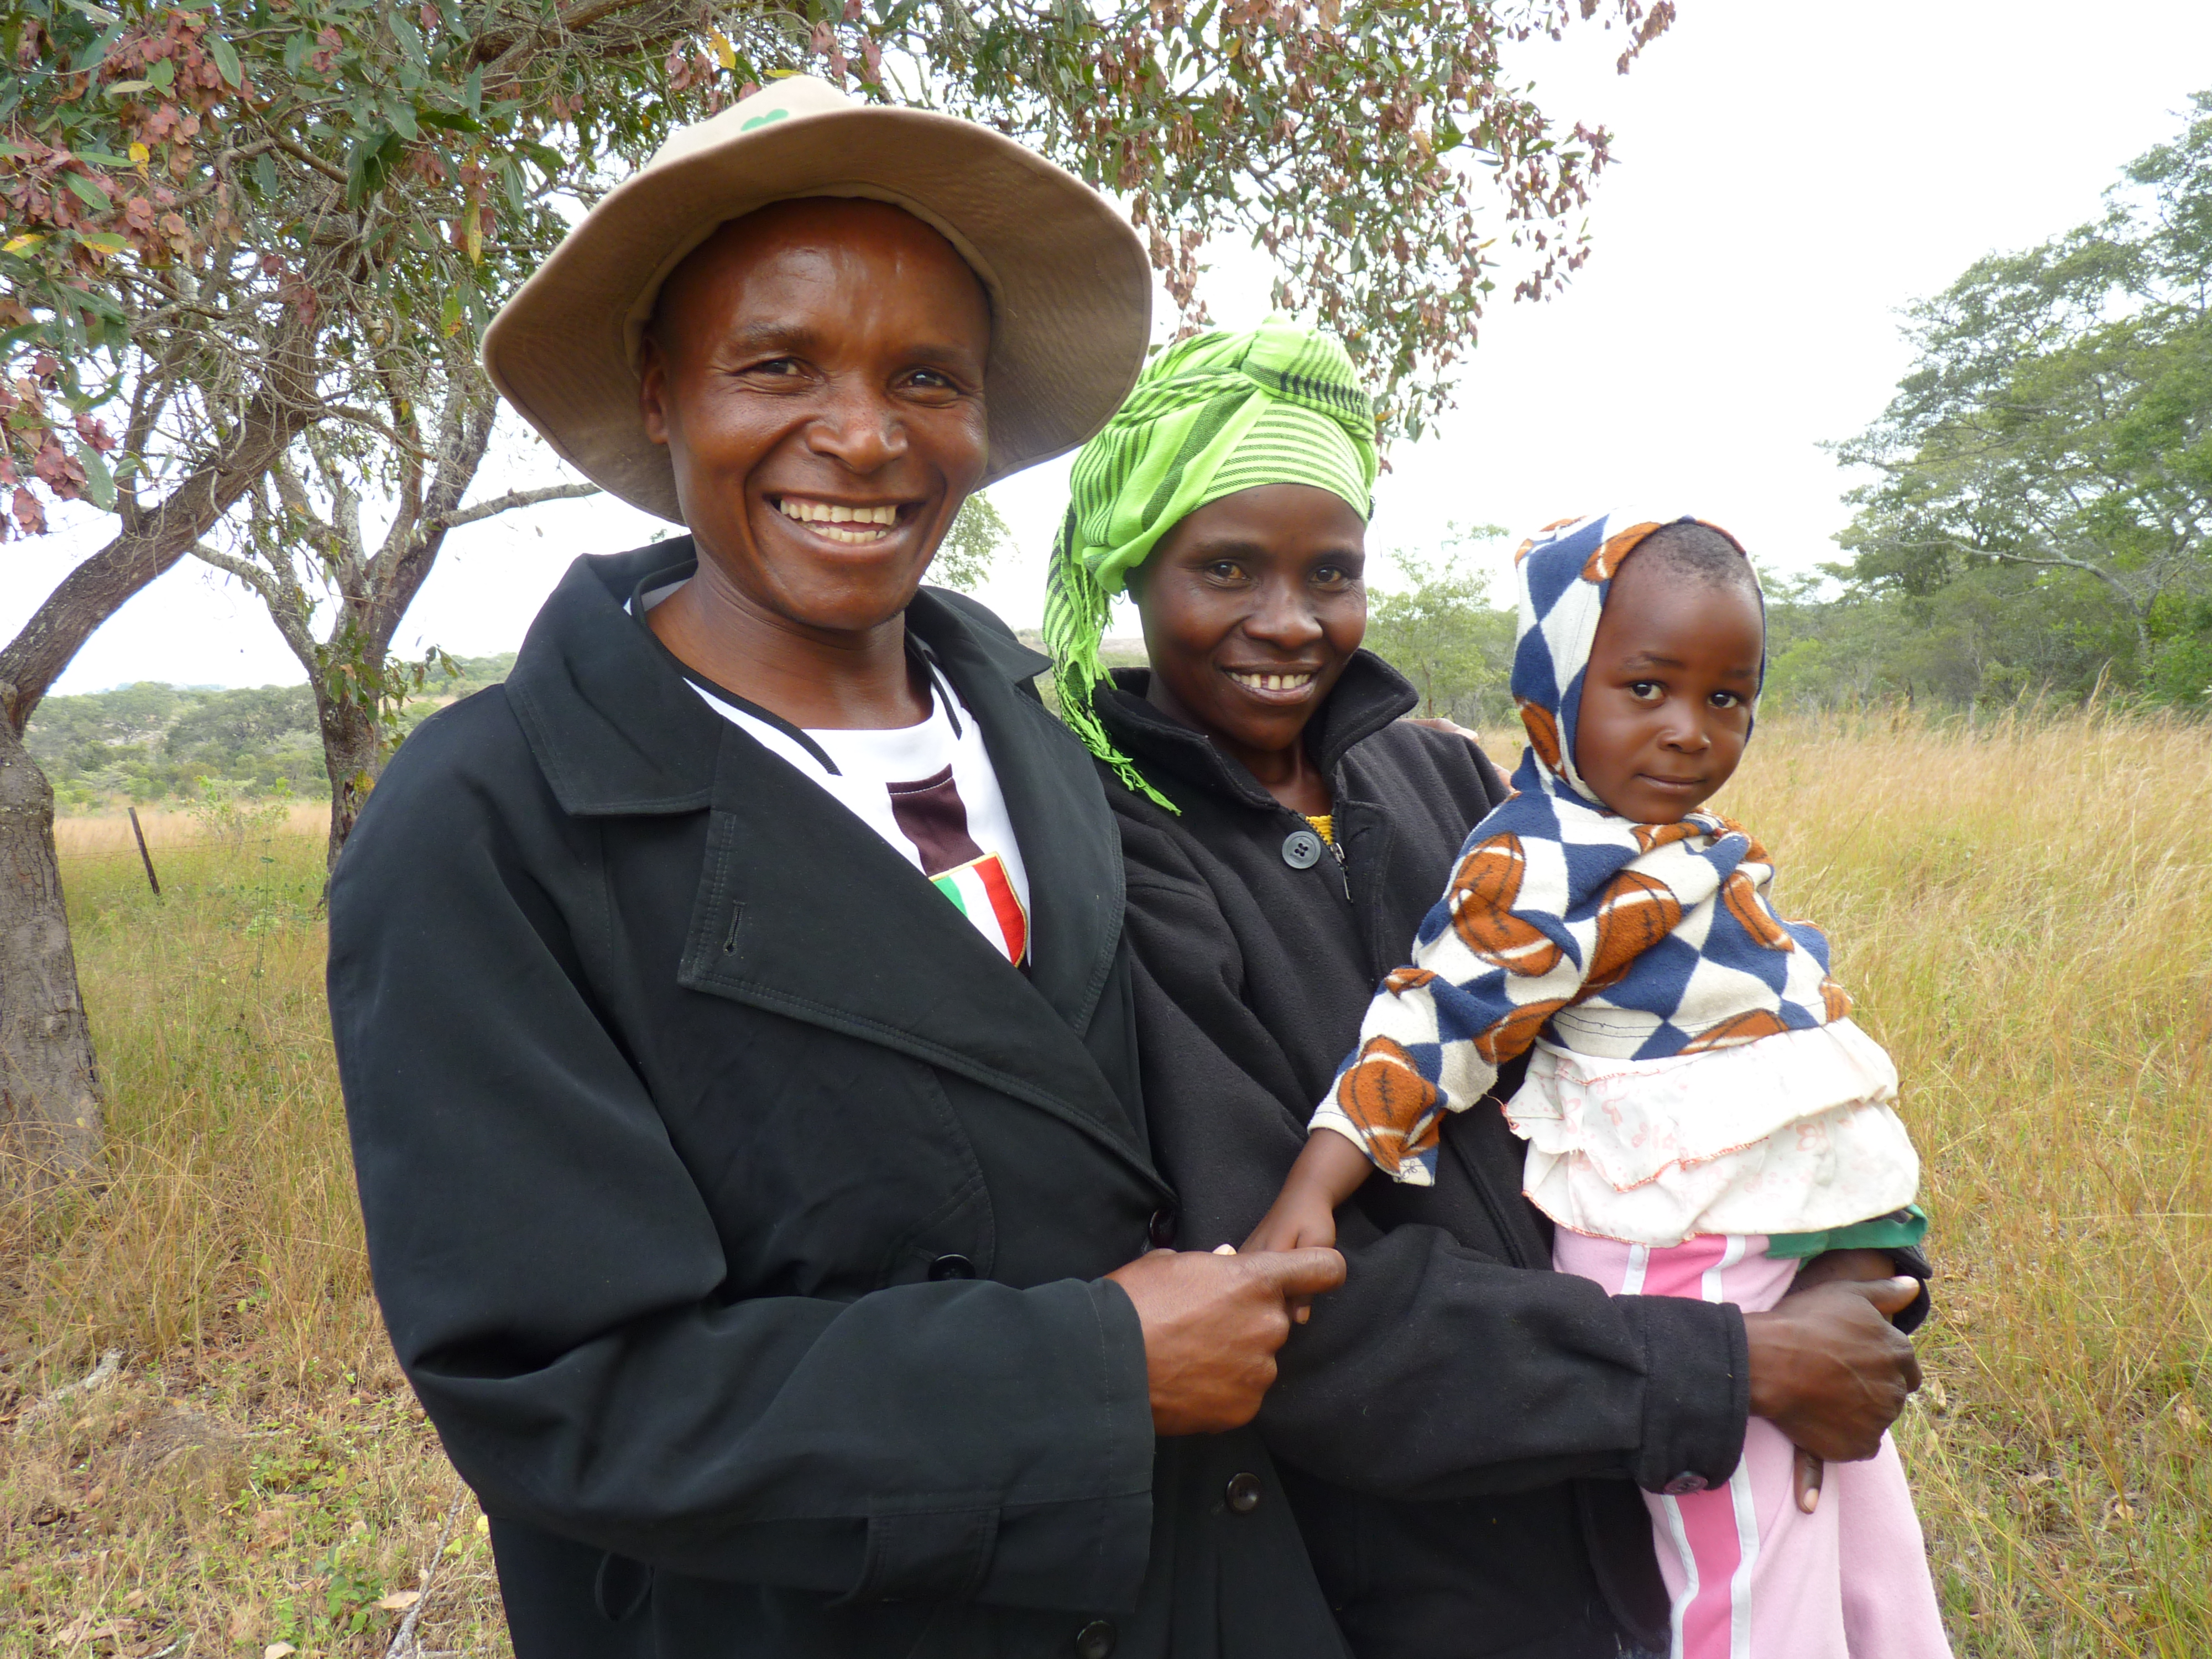 HIV positive family. Zimbabwe. Varaidzo Chipunza, Antony Chivang